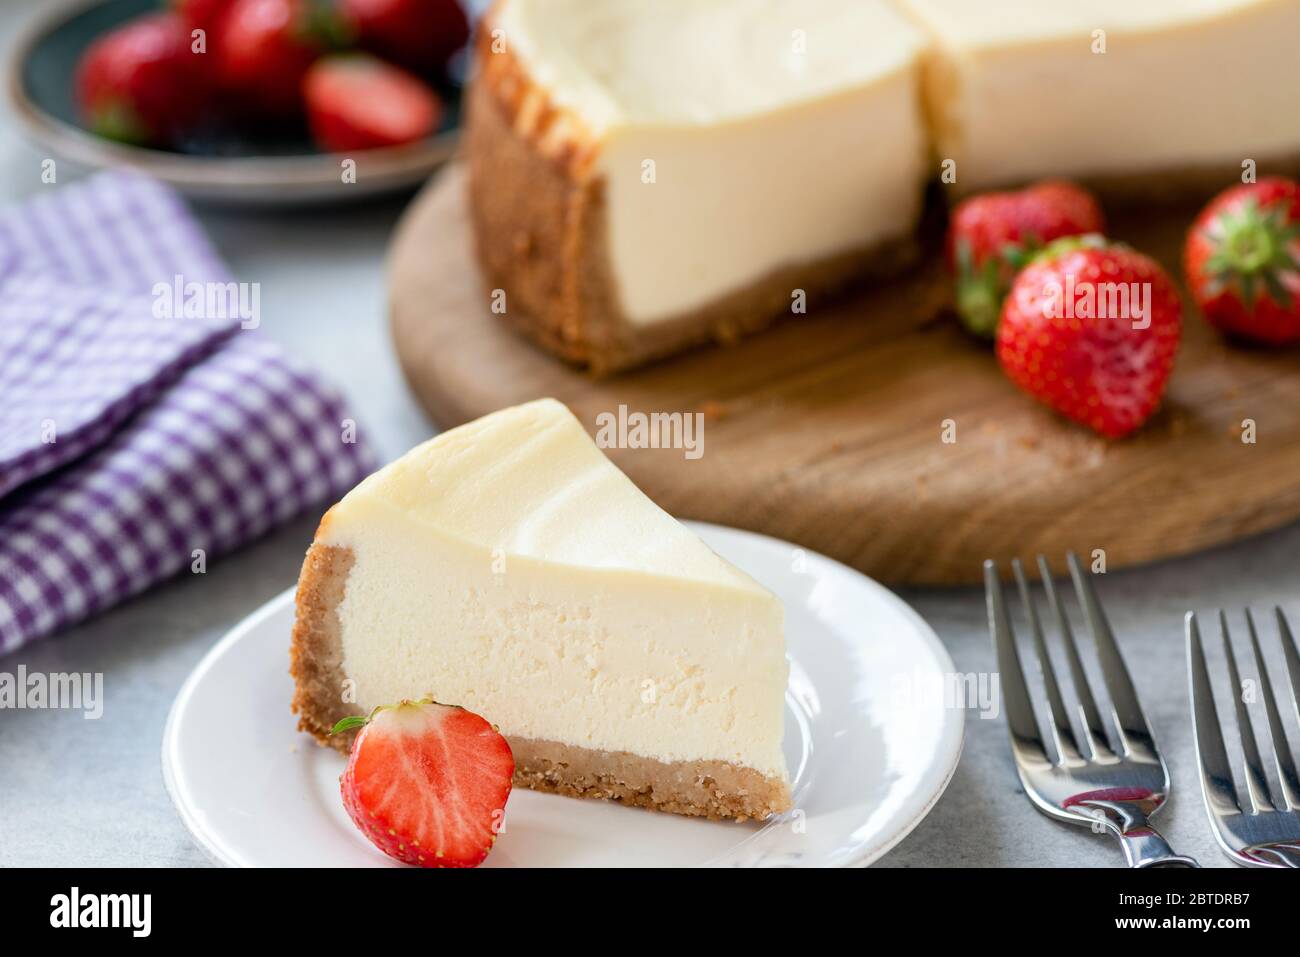 Tarta de queso con fresas en el plato. Tarta de queso casera. Pastel de queso crema al estilo de Nueva York Foto de stock